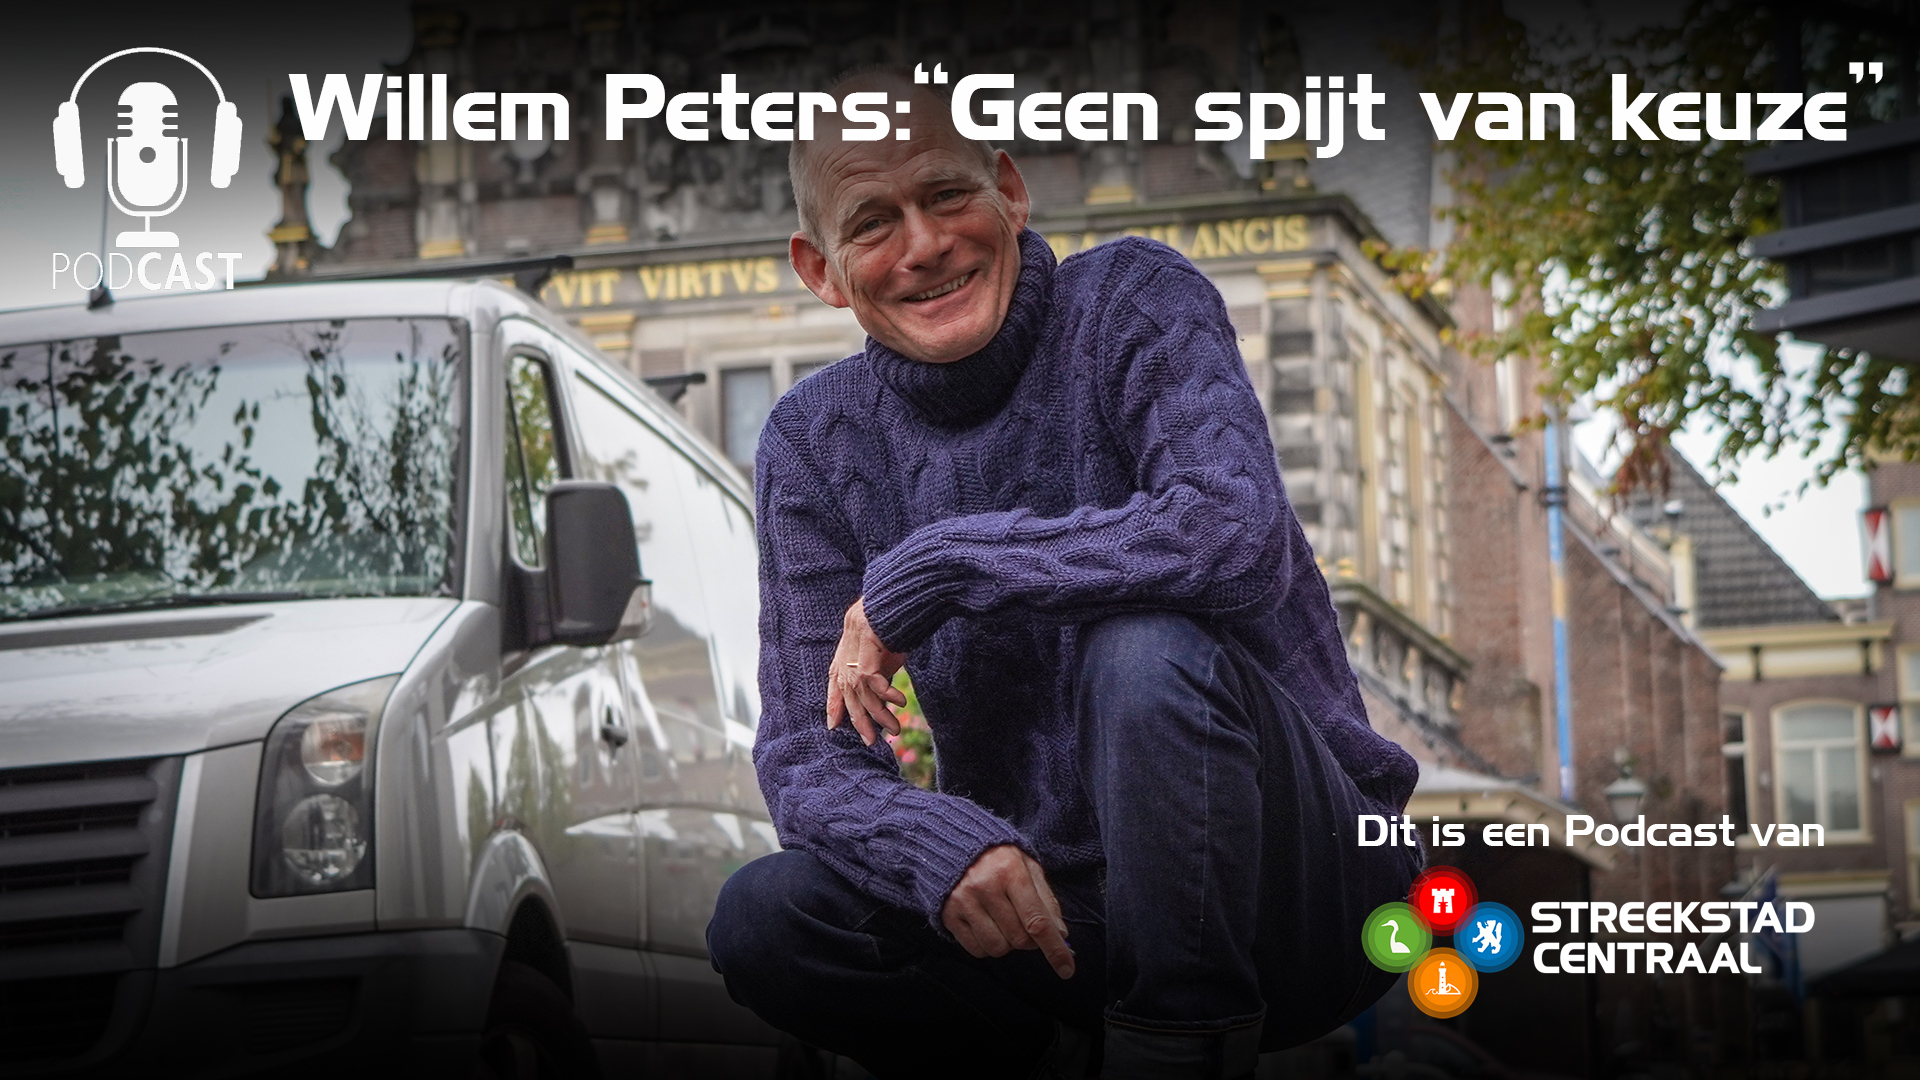 Gemeenteraad neemt waarschijnlijk afscheid van Willem Peters: “Geen spijt van keuze”